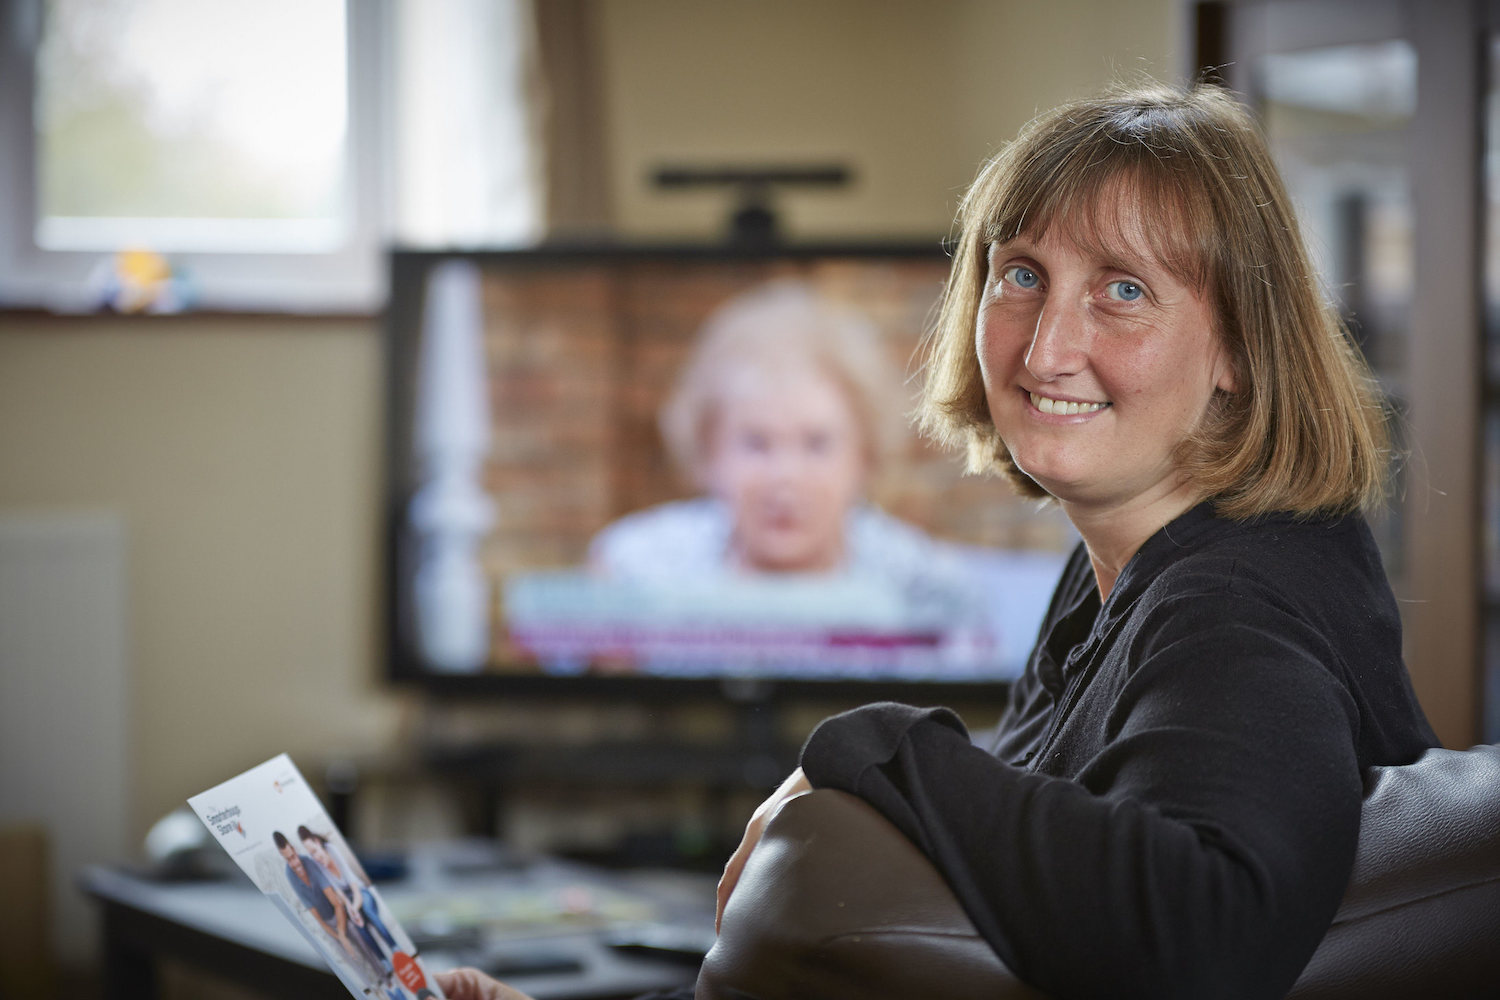 Smarterbuys - Julie Bushnell enjoying her new TV